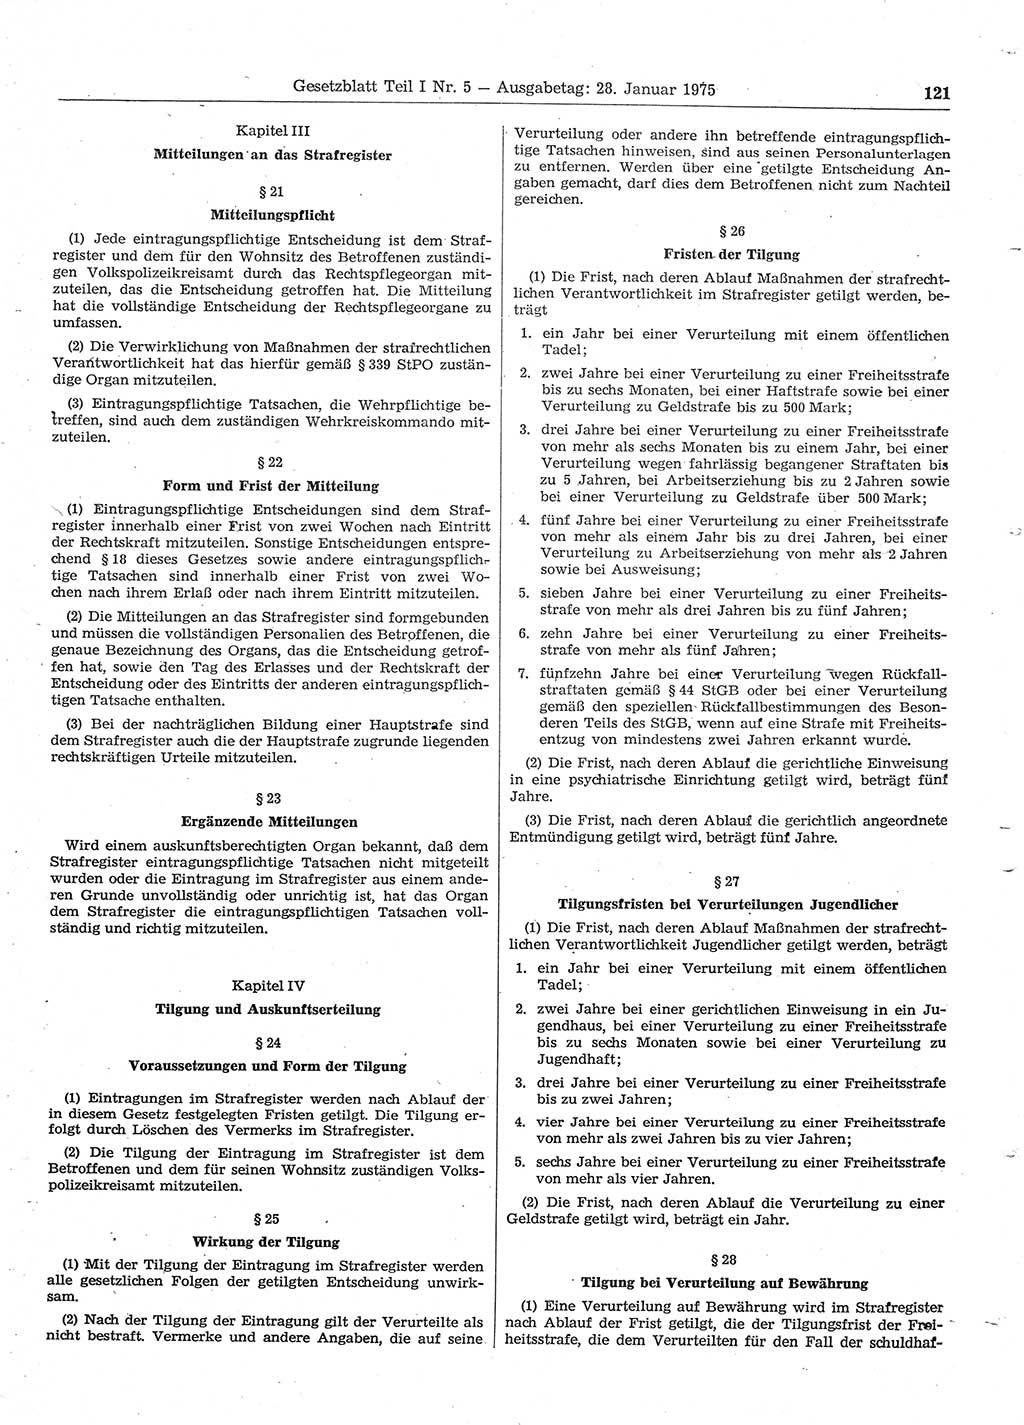 Gesetzblatt (GBl.) der Deutschen Demokratischen Republik (DDR) Teil Ⅰ 1975, Seite 121 (GBl. DDR Ⅰ 1975, S. 121)